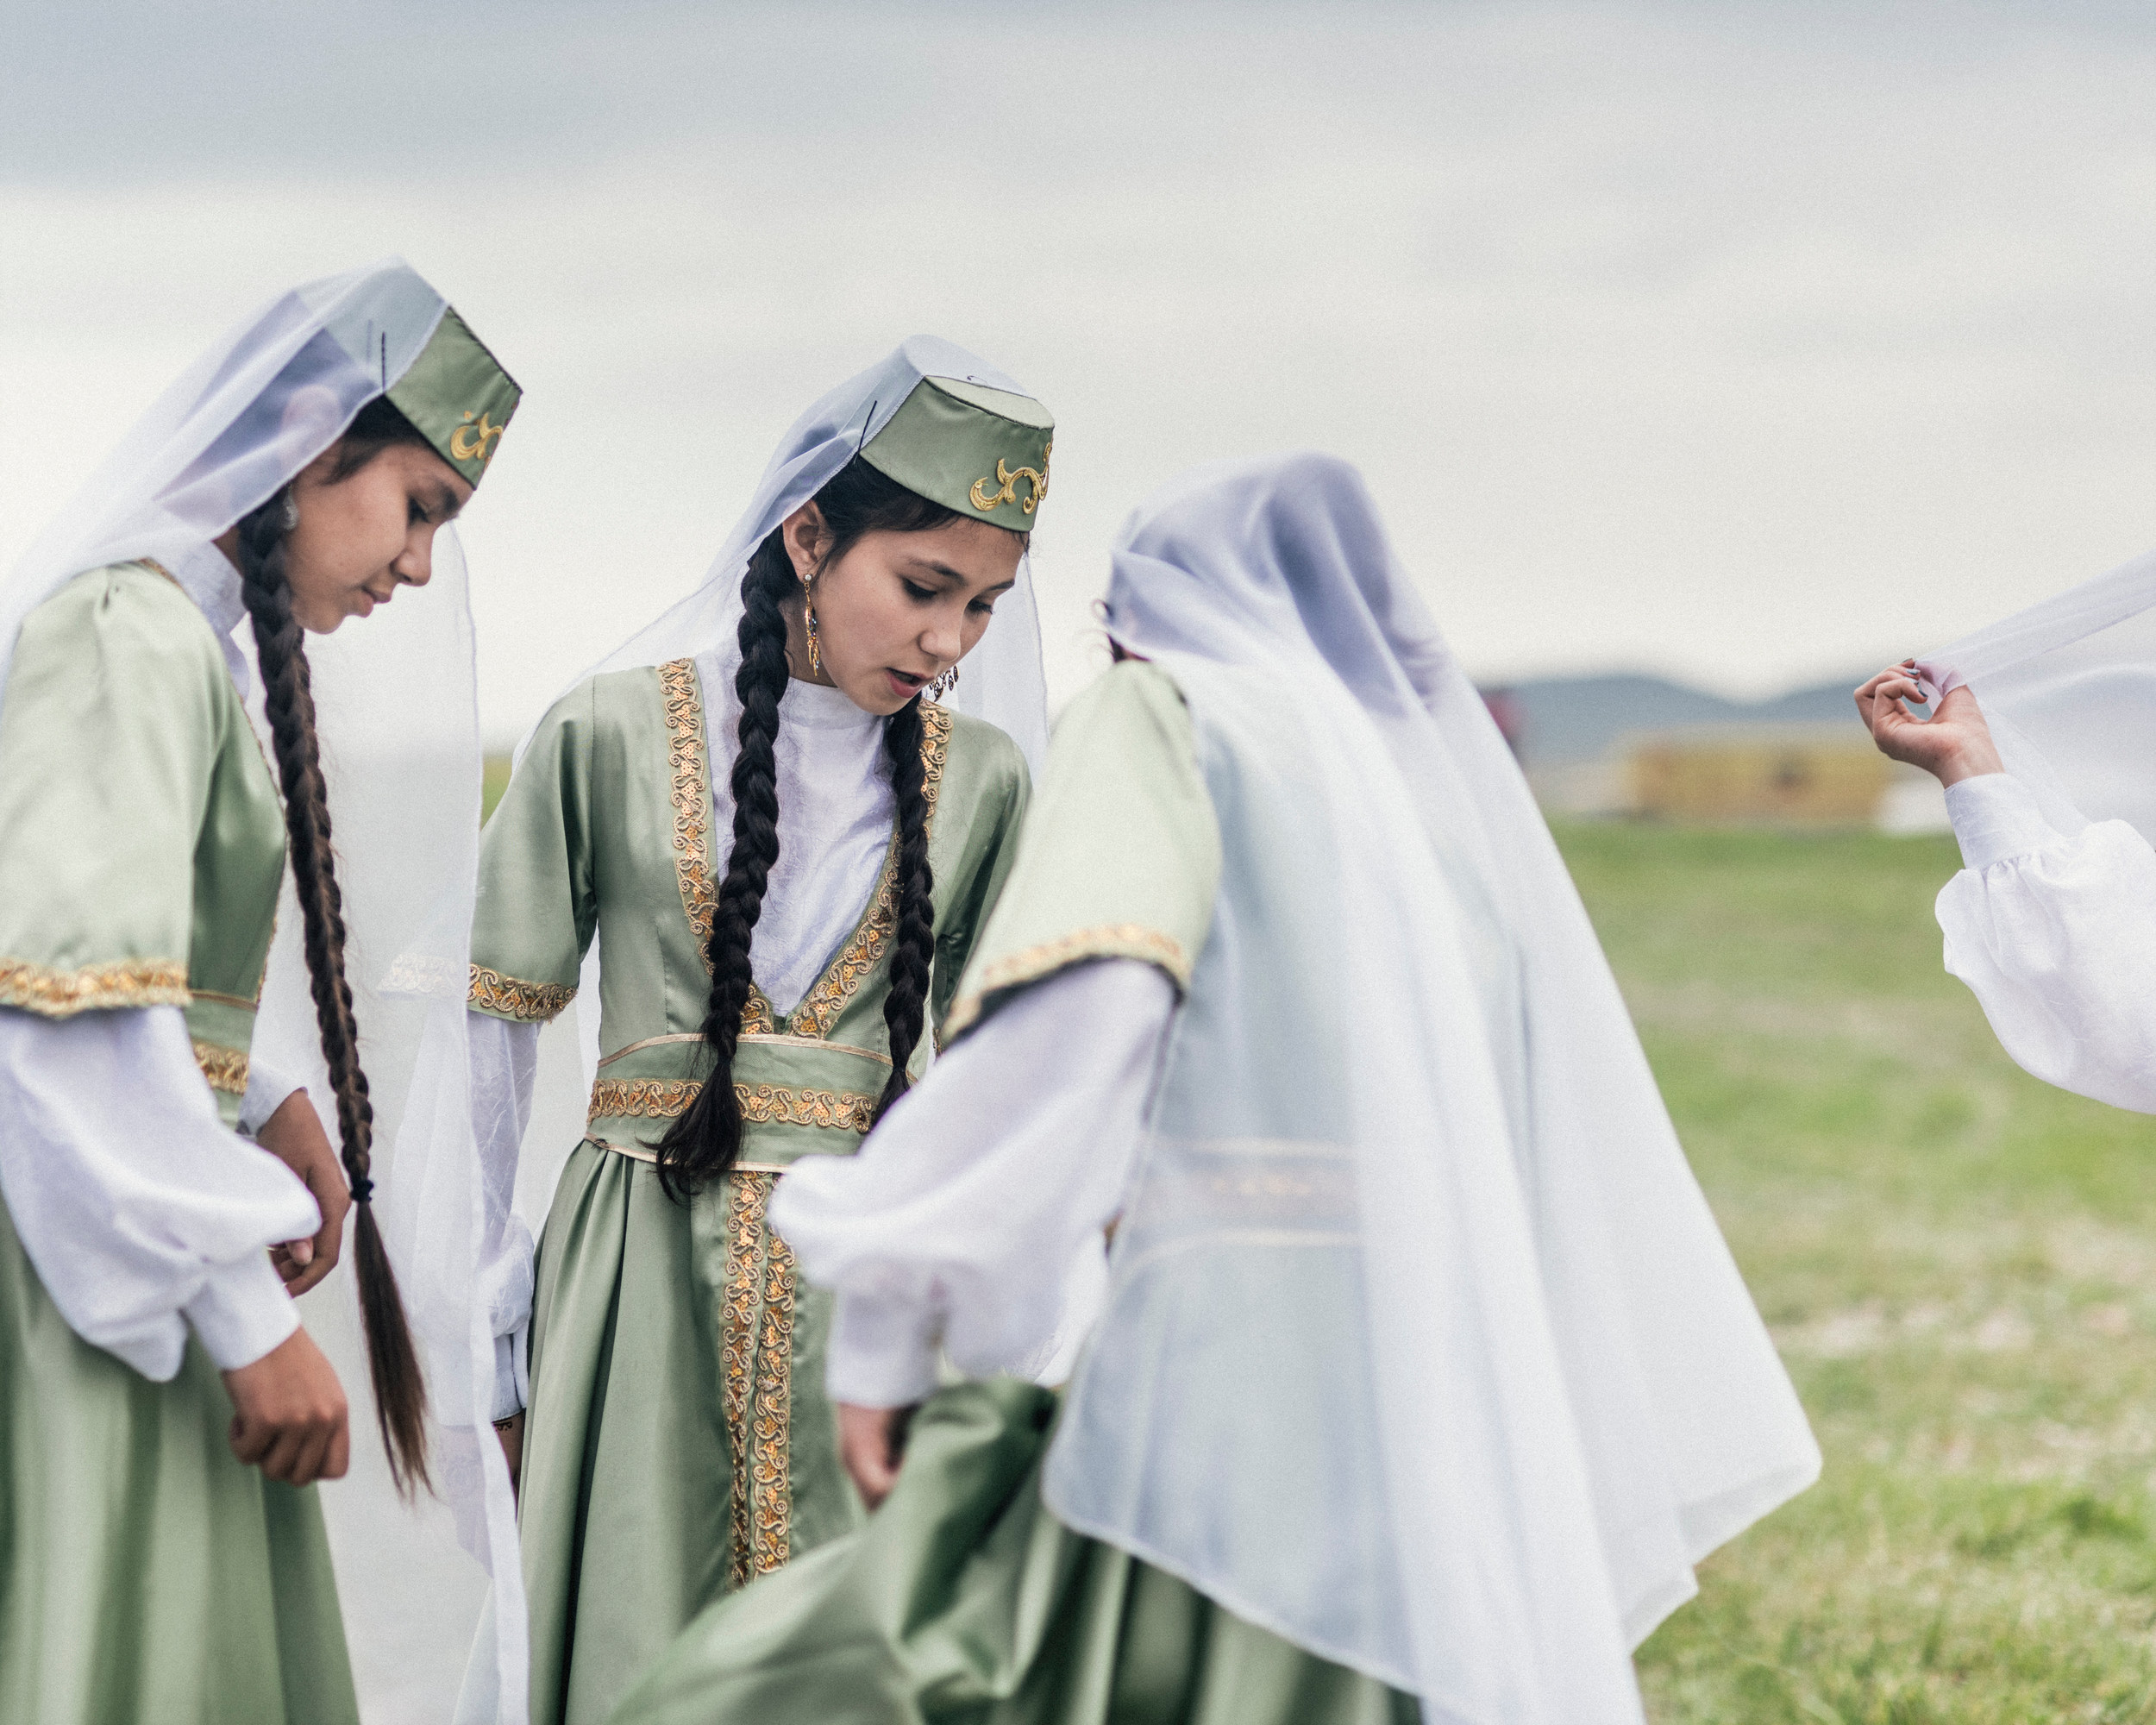  Більшість кримських татар цього року бойкотували Хидирлез, своє традиційне весняне свято, оскільки його проводила російська влада. На ньому виступала 12-річна Медіне Усманова зі своїм ансамблем народного танцю.